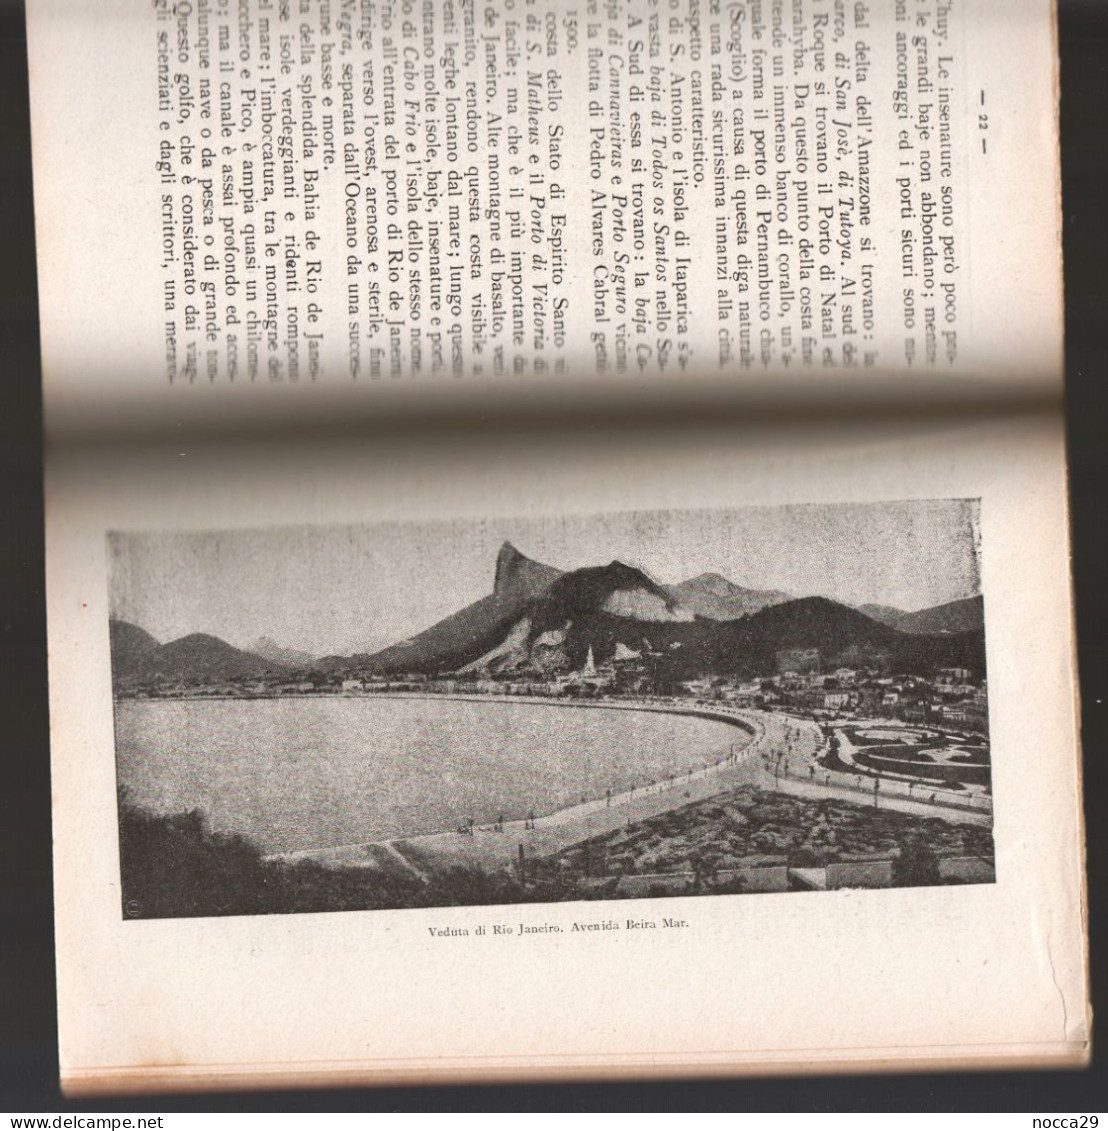 LIBRO - PICCOLA STORIA DEL POPOLO BRASILIANO - 1923 - VALLARDI EDITORE - AUTORE G. MONACHESI (STAMP327)